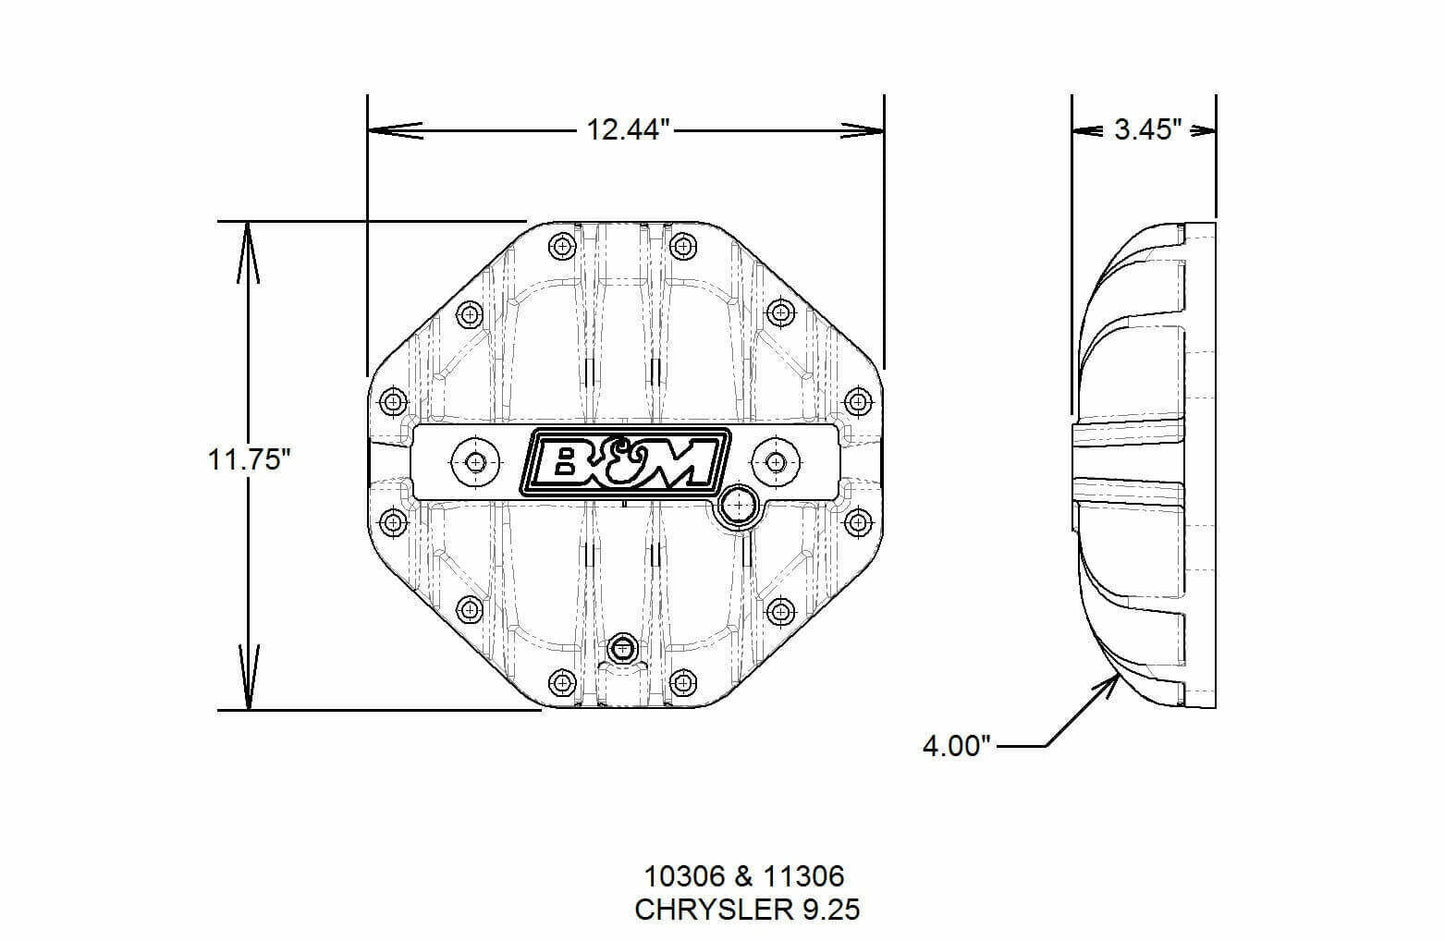 B&M Hi-Tek Aluminum Differential Cover for Chrysler 9.25-inch - 10306